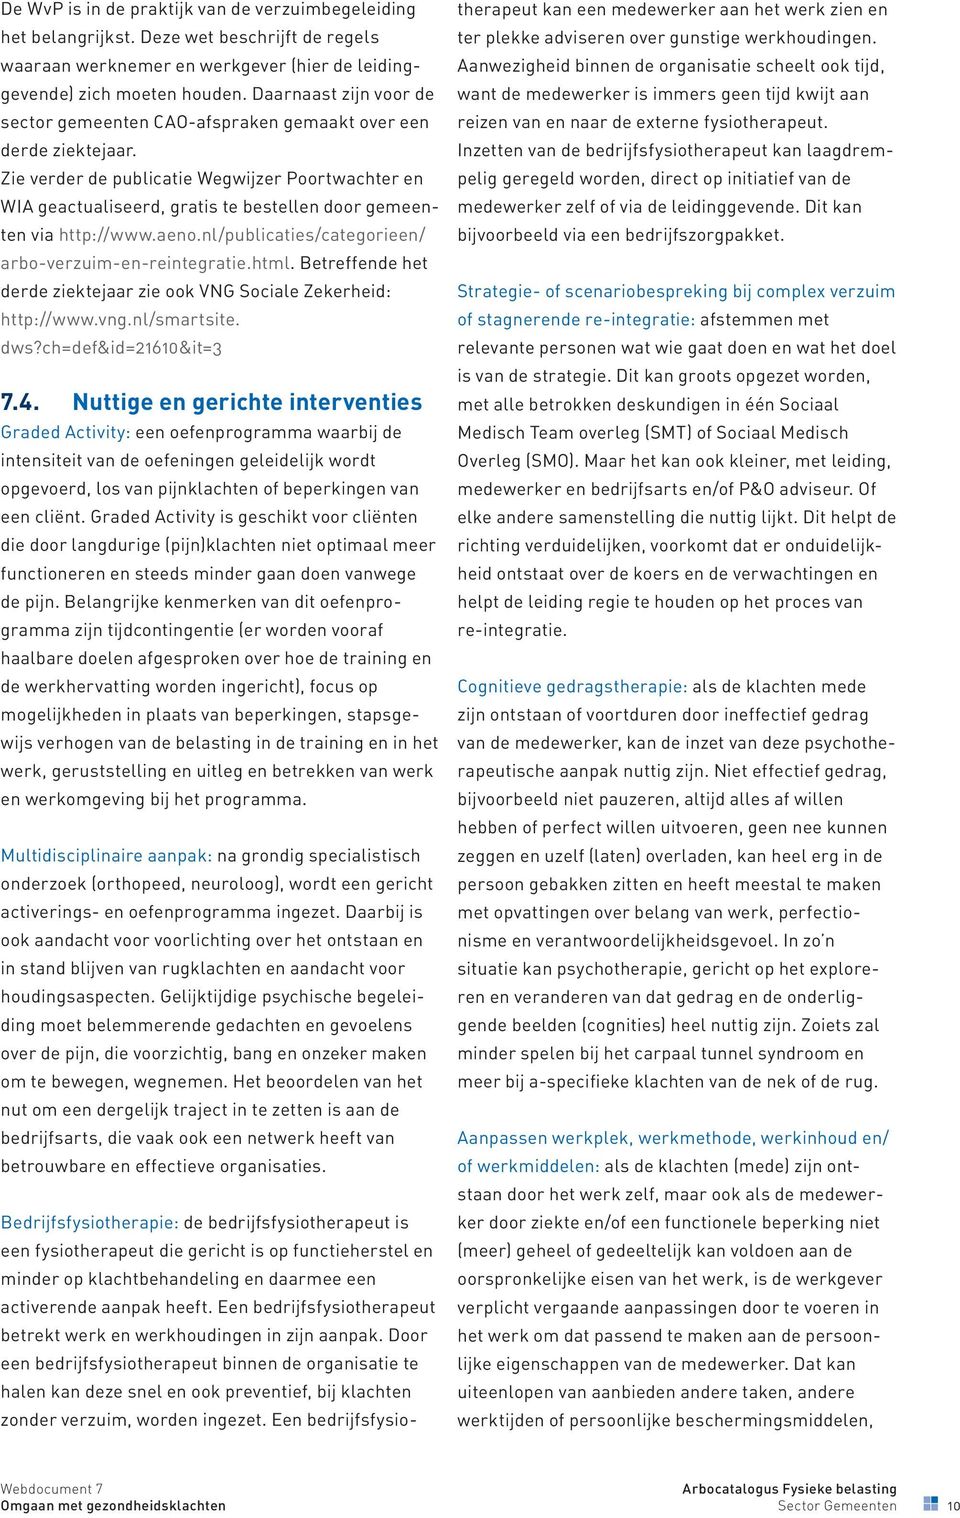 Zie verder de publicatie Wegwijzer Poortwachter en WIA geactualiseerd, gratis te bestellen door gemeenten via http://www.aeno.nl/publicaties/categorieen/ arbo-verzuim-en-reintegratie.html.